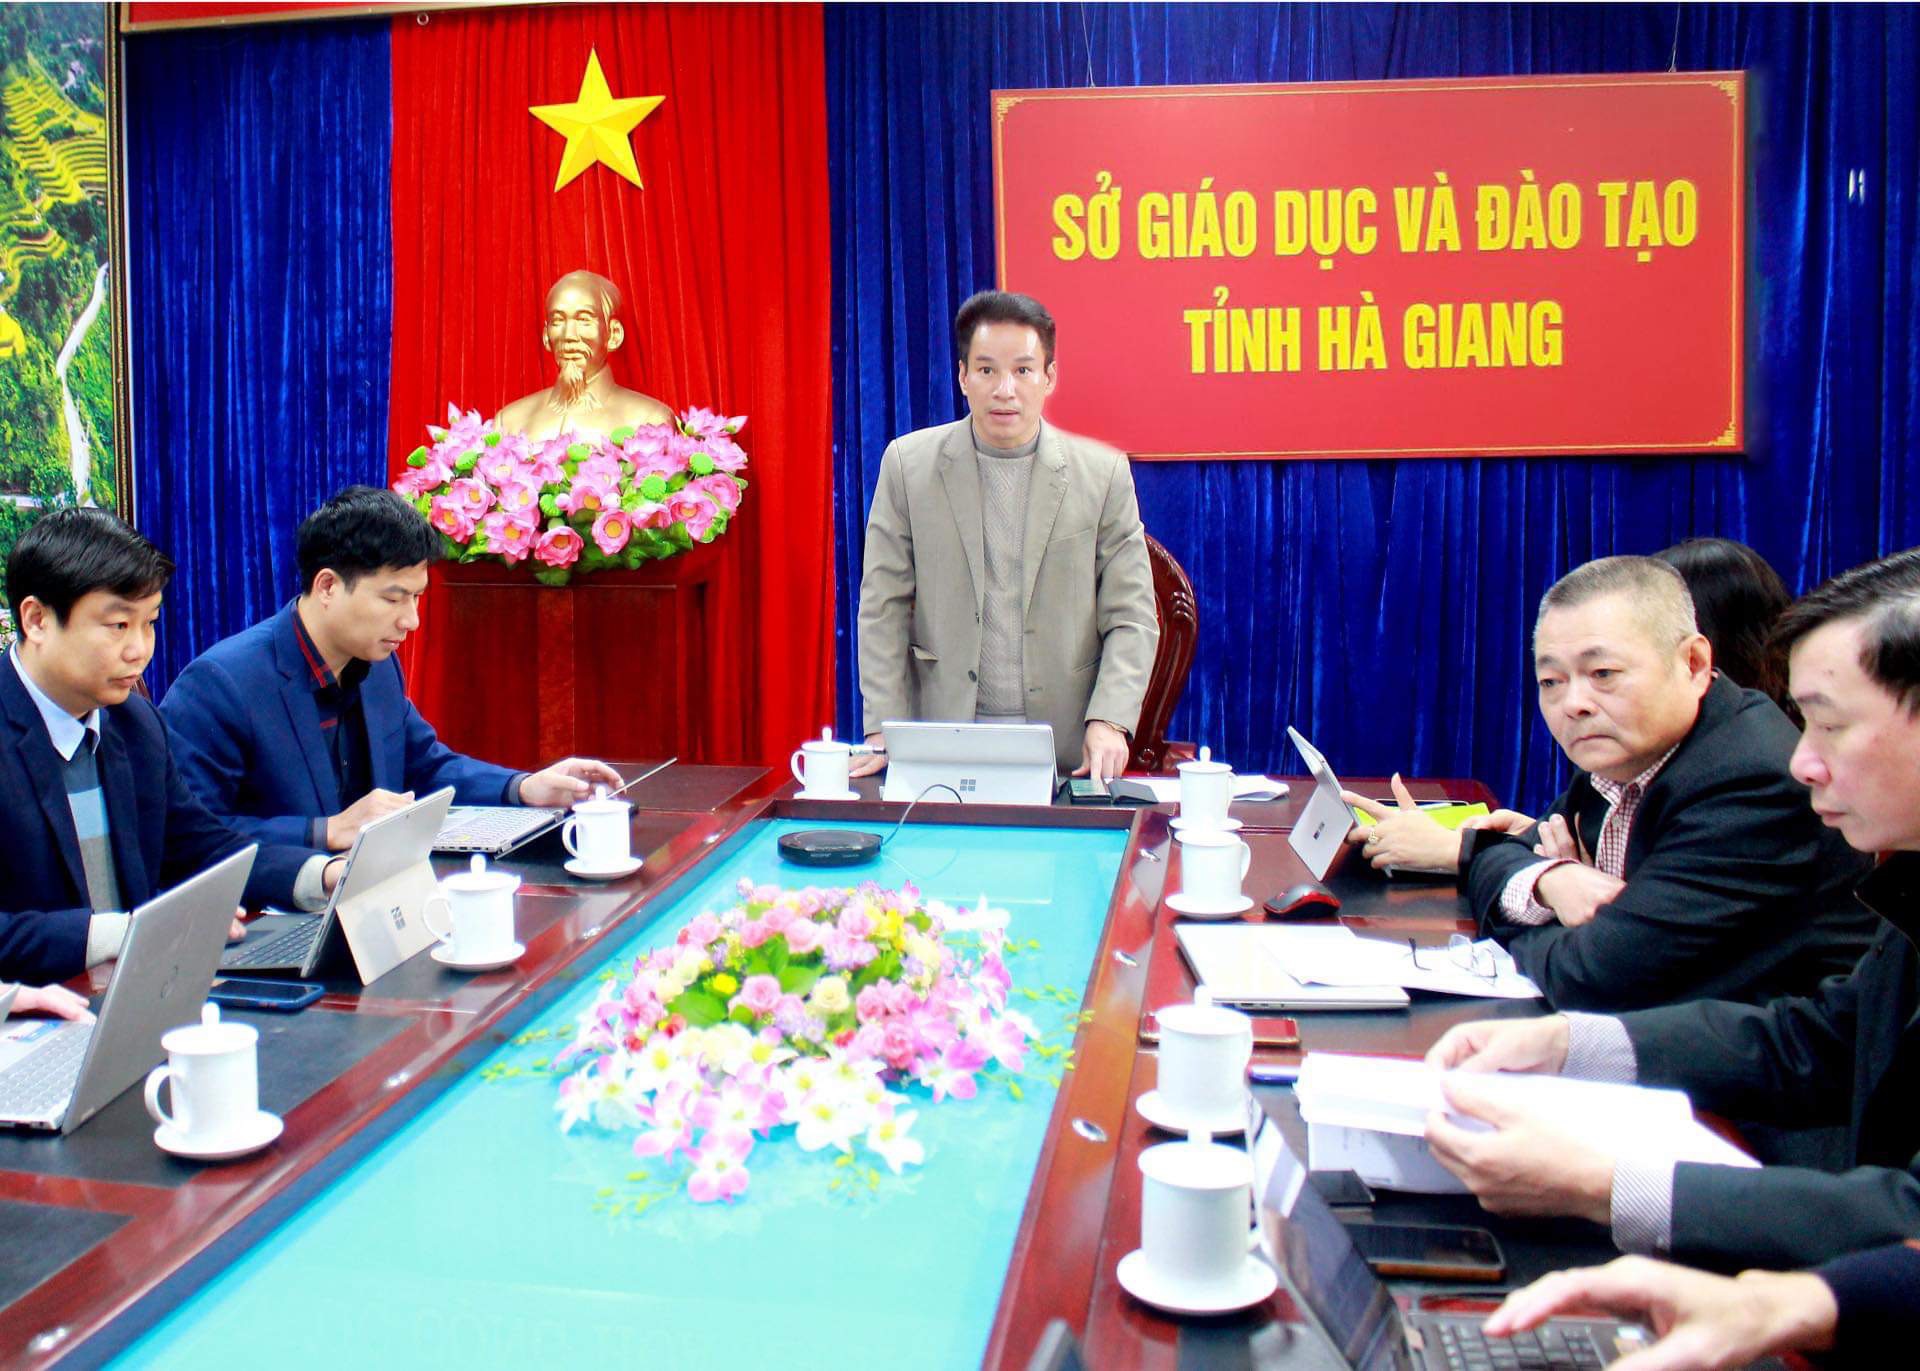 Đồng chí Nguyễn Thế Bình, Giám đốc Sở GD&ĐT phát biểu tại hội nghị.